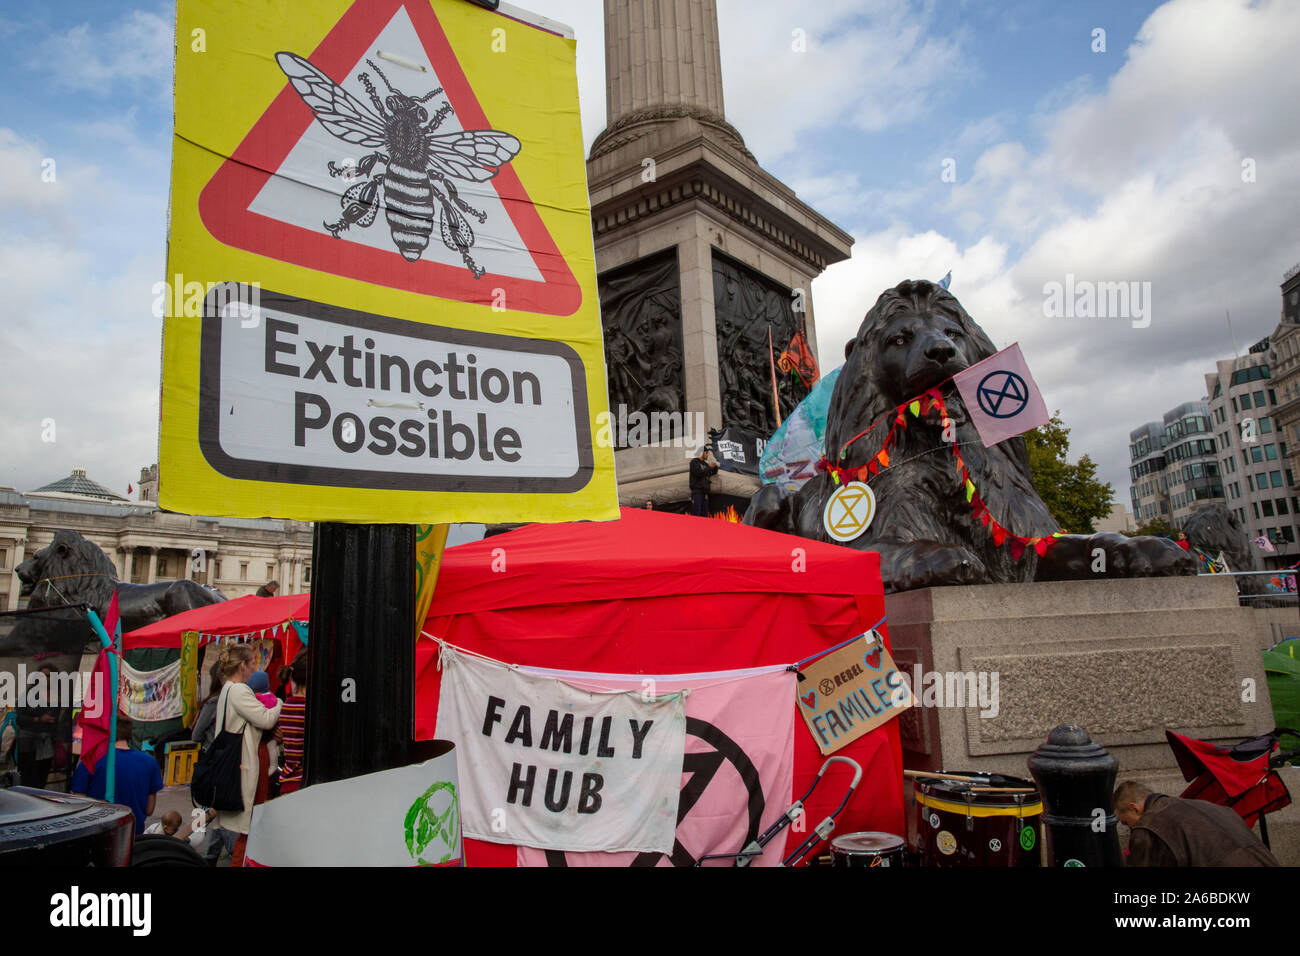 Londres, 10 octobre 2019, l'extinction et l'occupation de démonstration rébellion Trafalgar Square. Banque D'Images